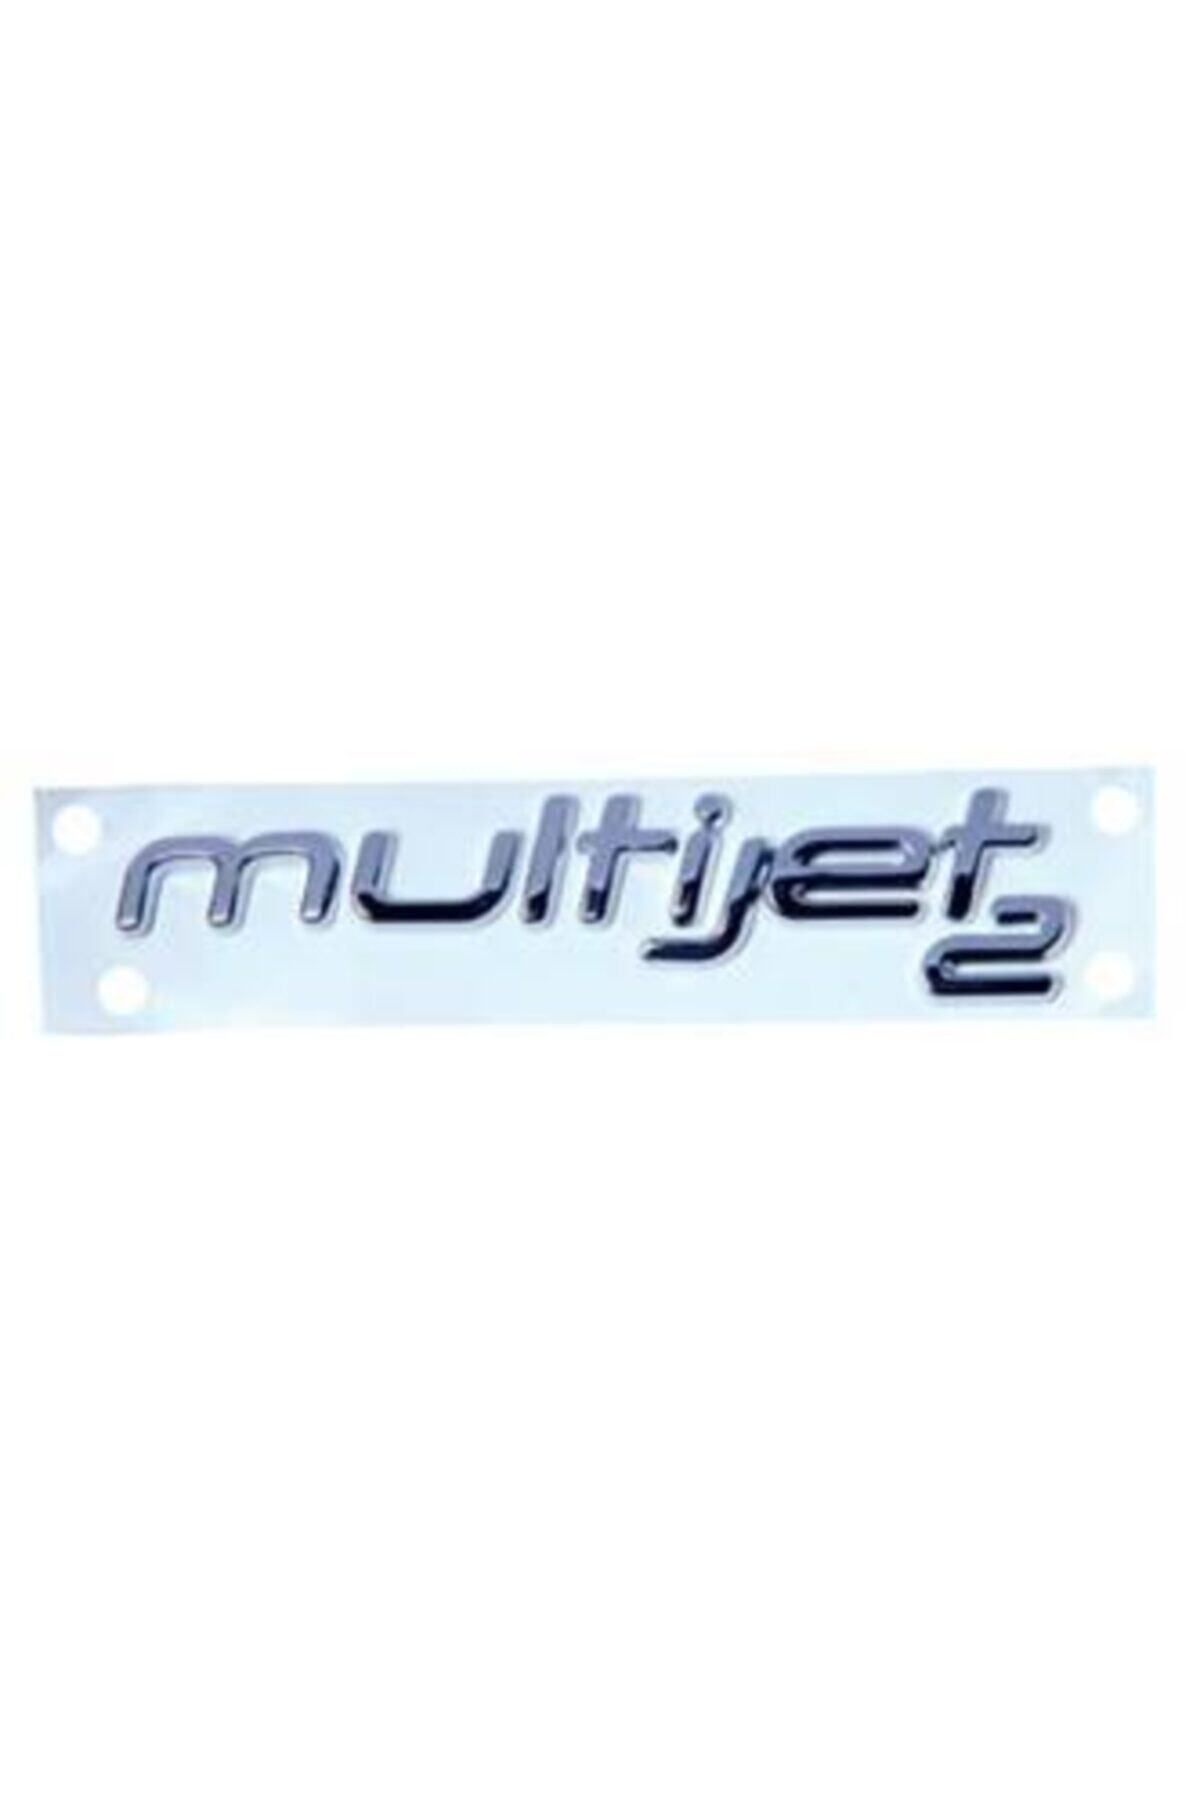 EDEXPORT Egea Multijet Yazı 2016 Model